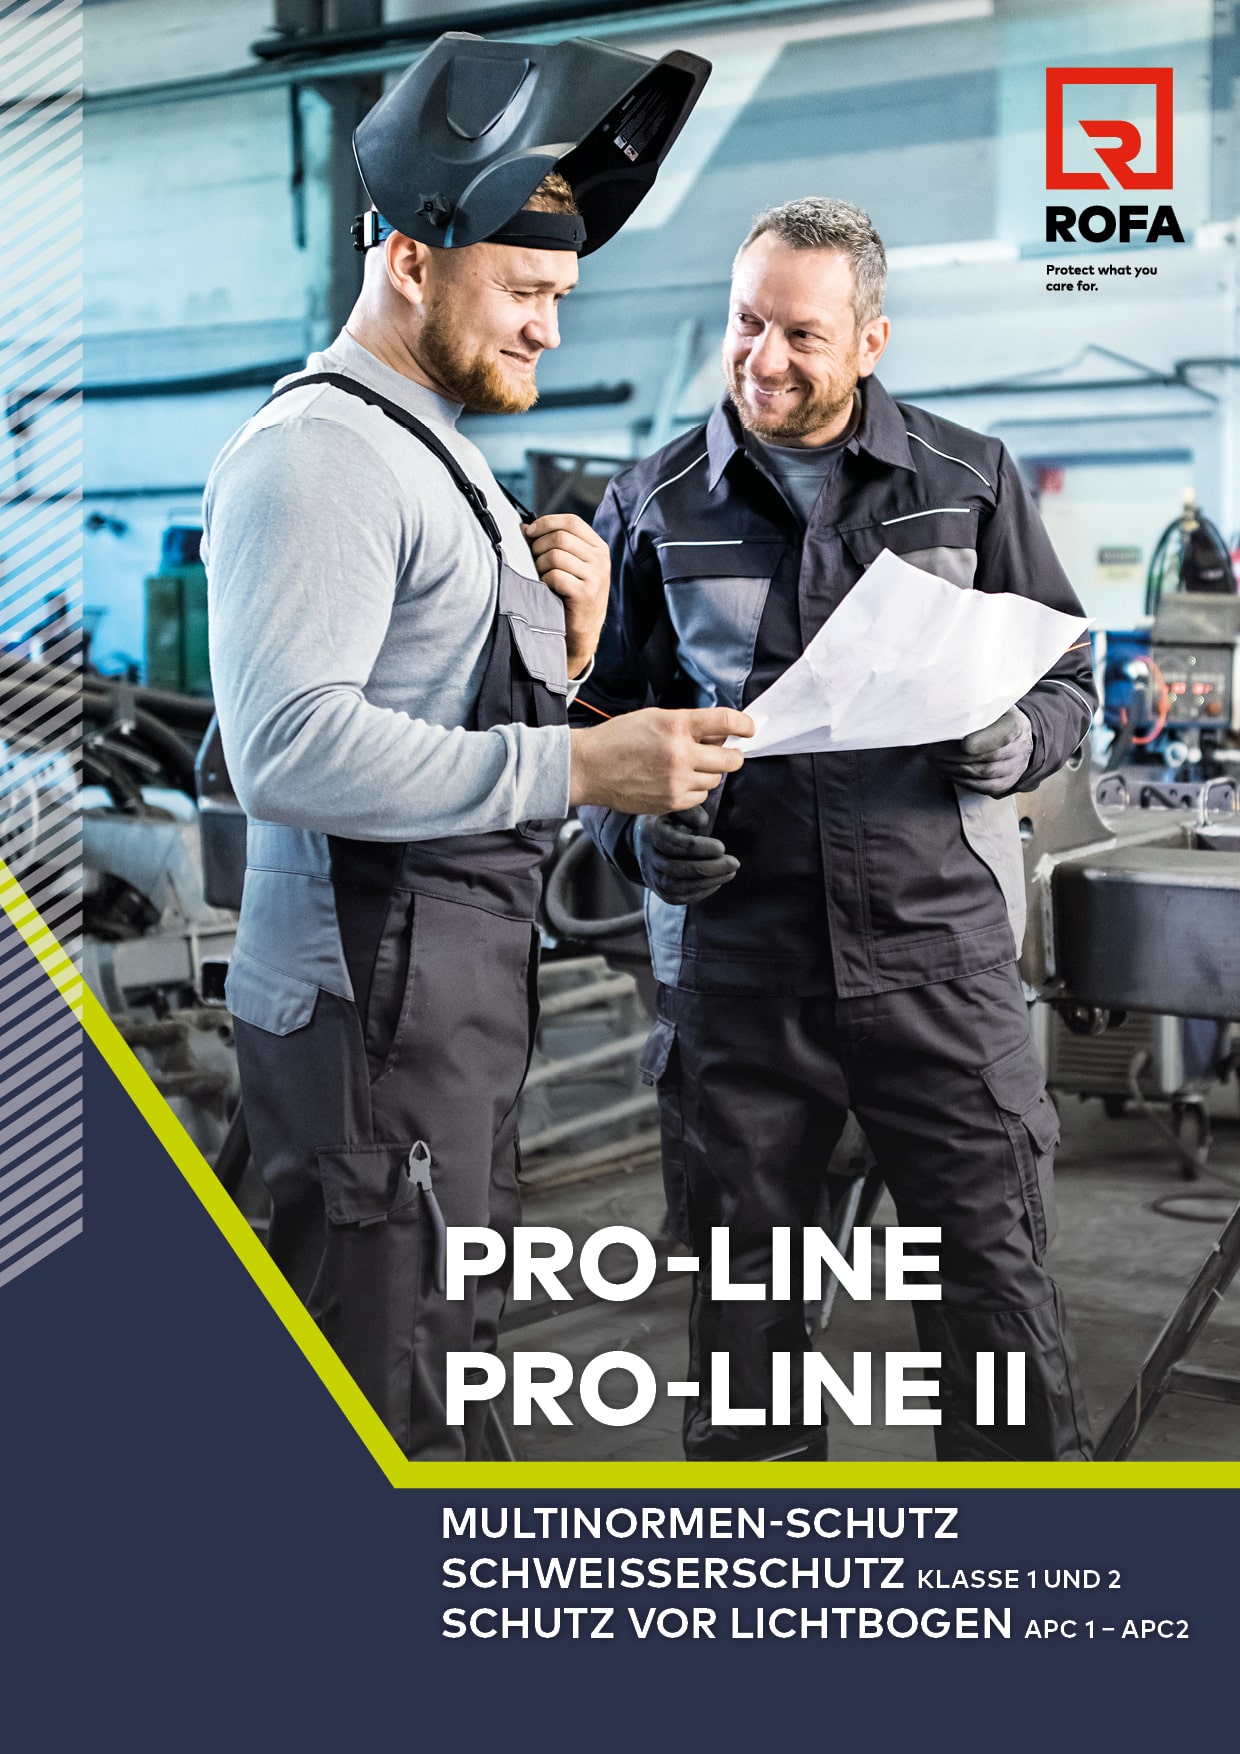 PRO-LINE: Multinormenschutz, Schweißerschutz, Arbeitsschutz, Lichtbogenschutz, Latzhose